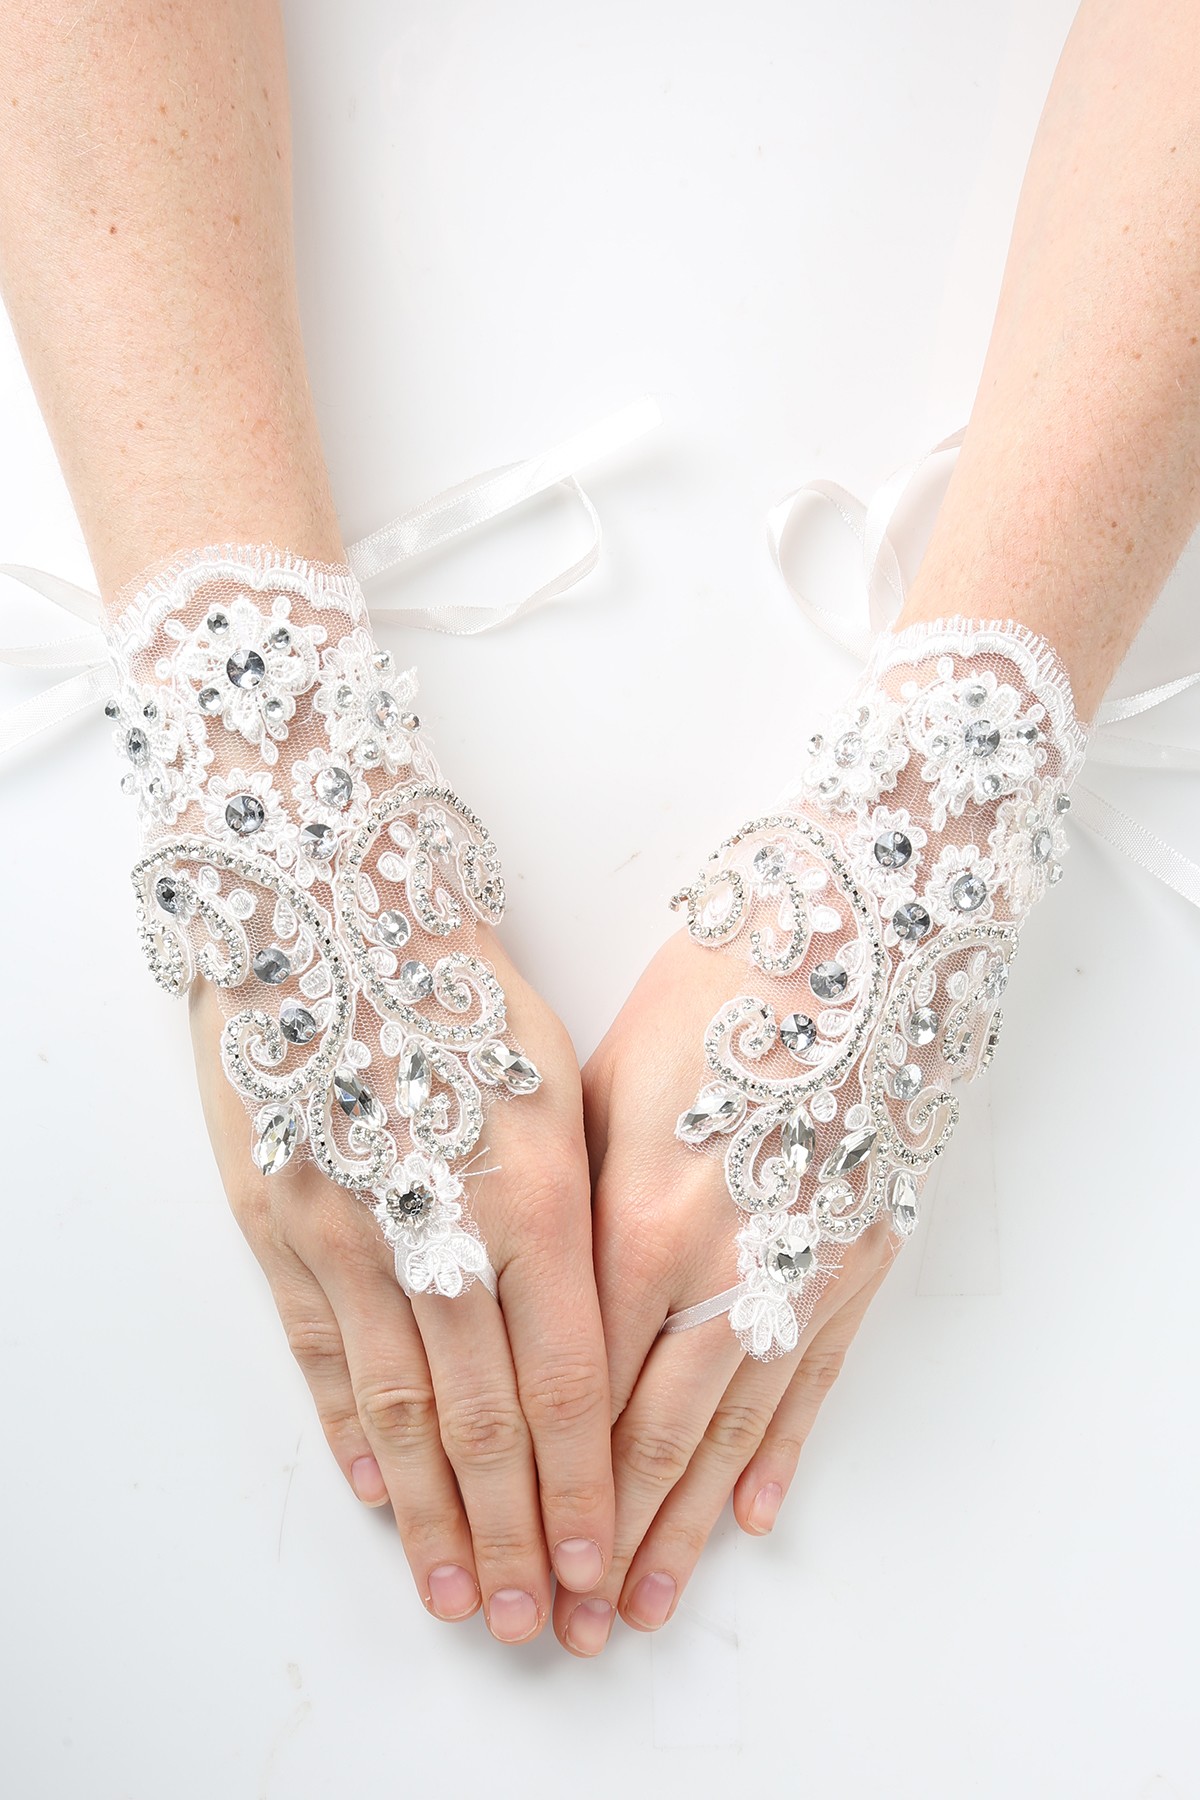 Elegant rhinestone lace fingerless gloves with sash tie back.